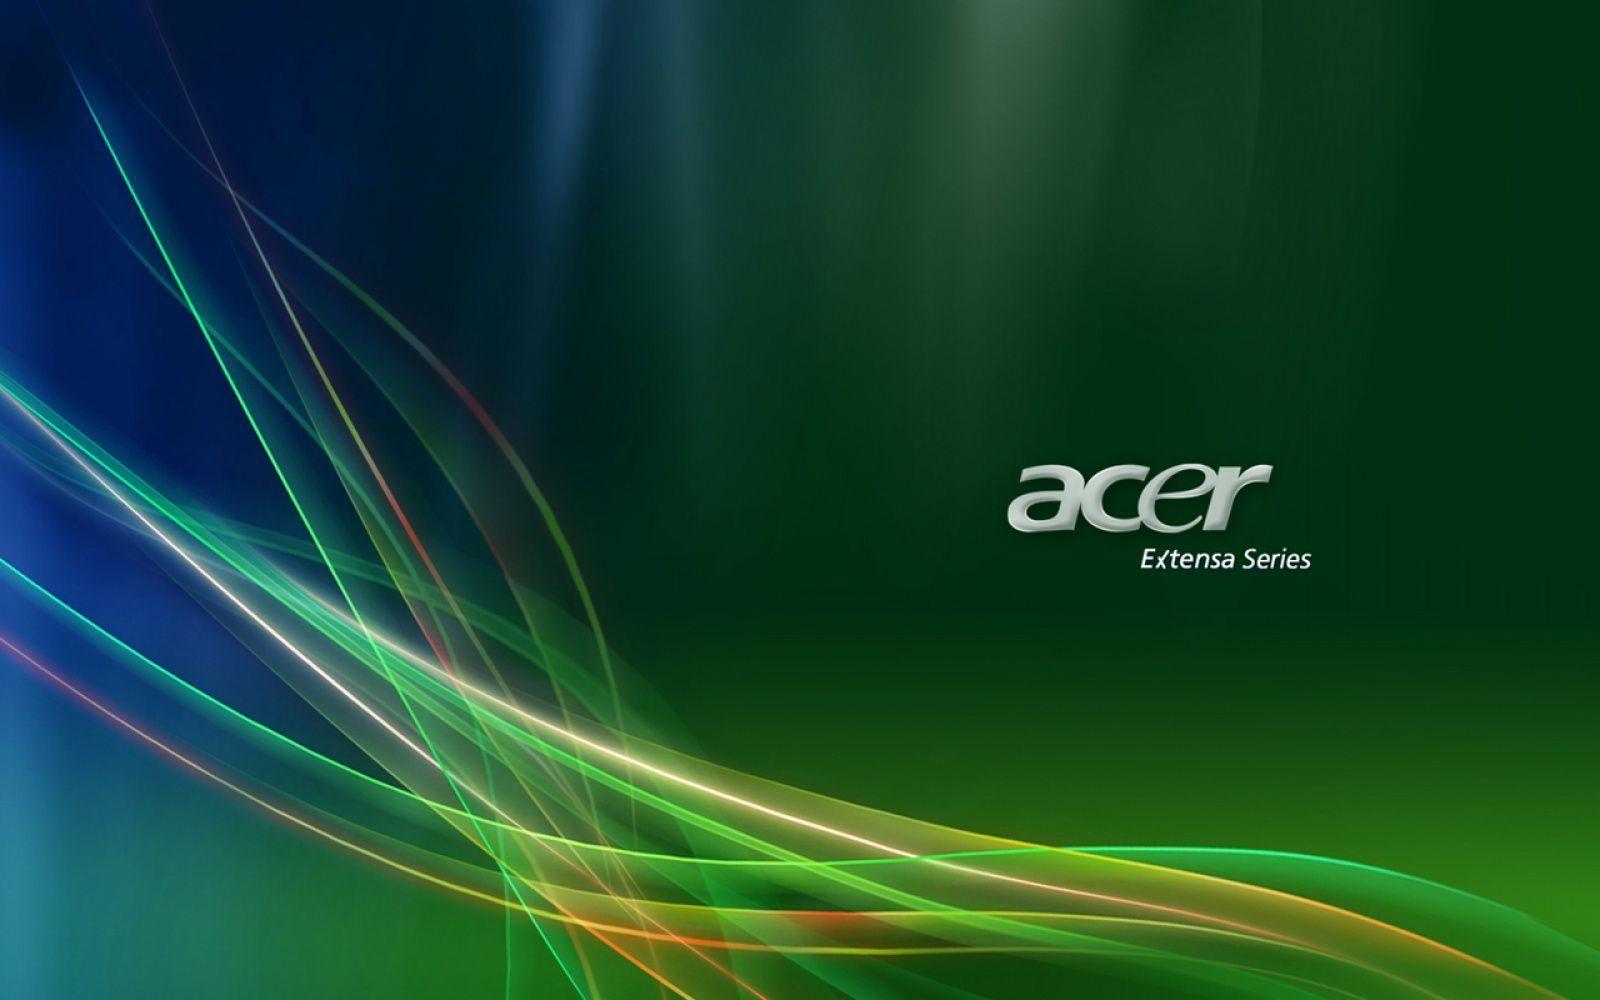 Acer Extensa Series Logo in Logos